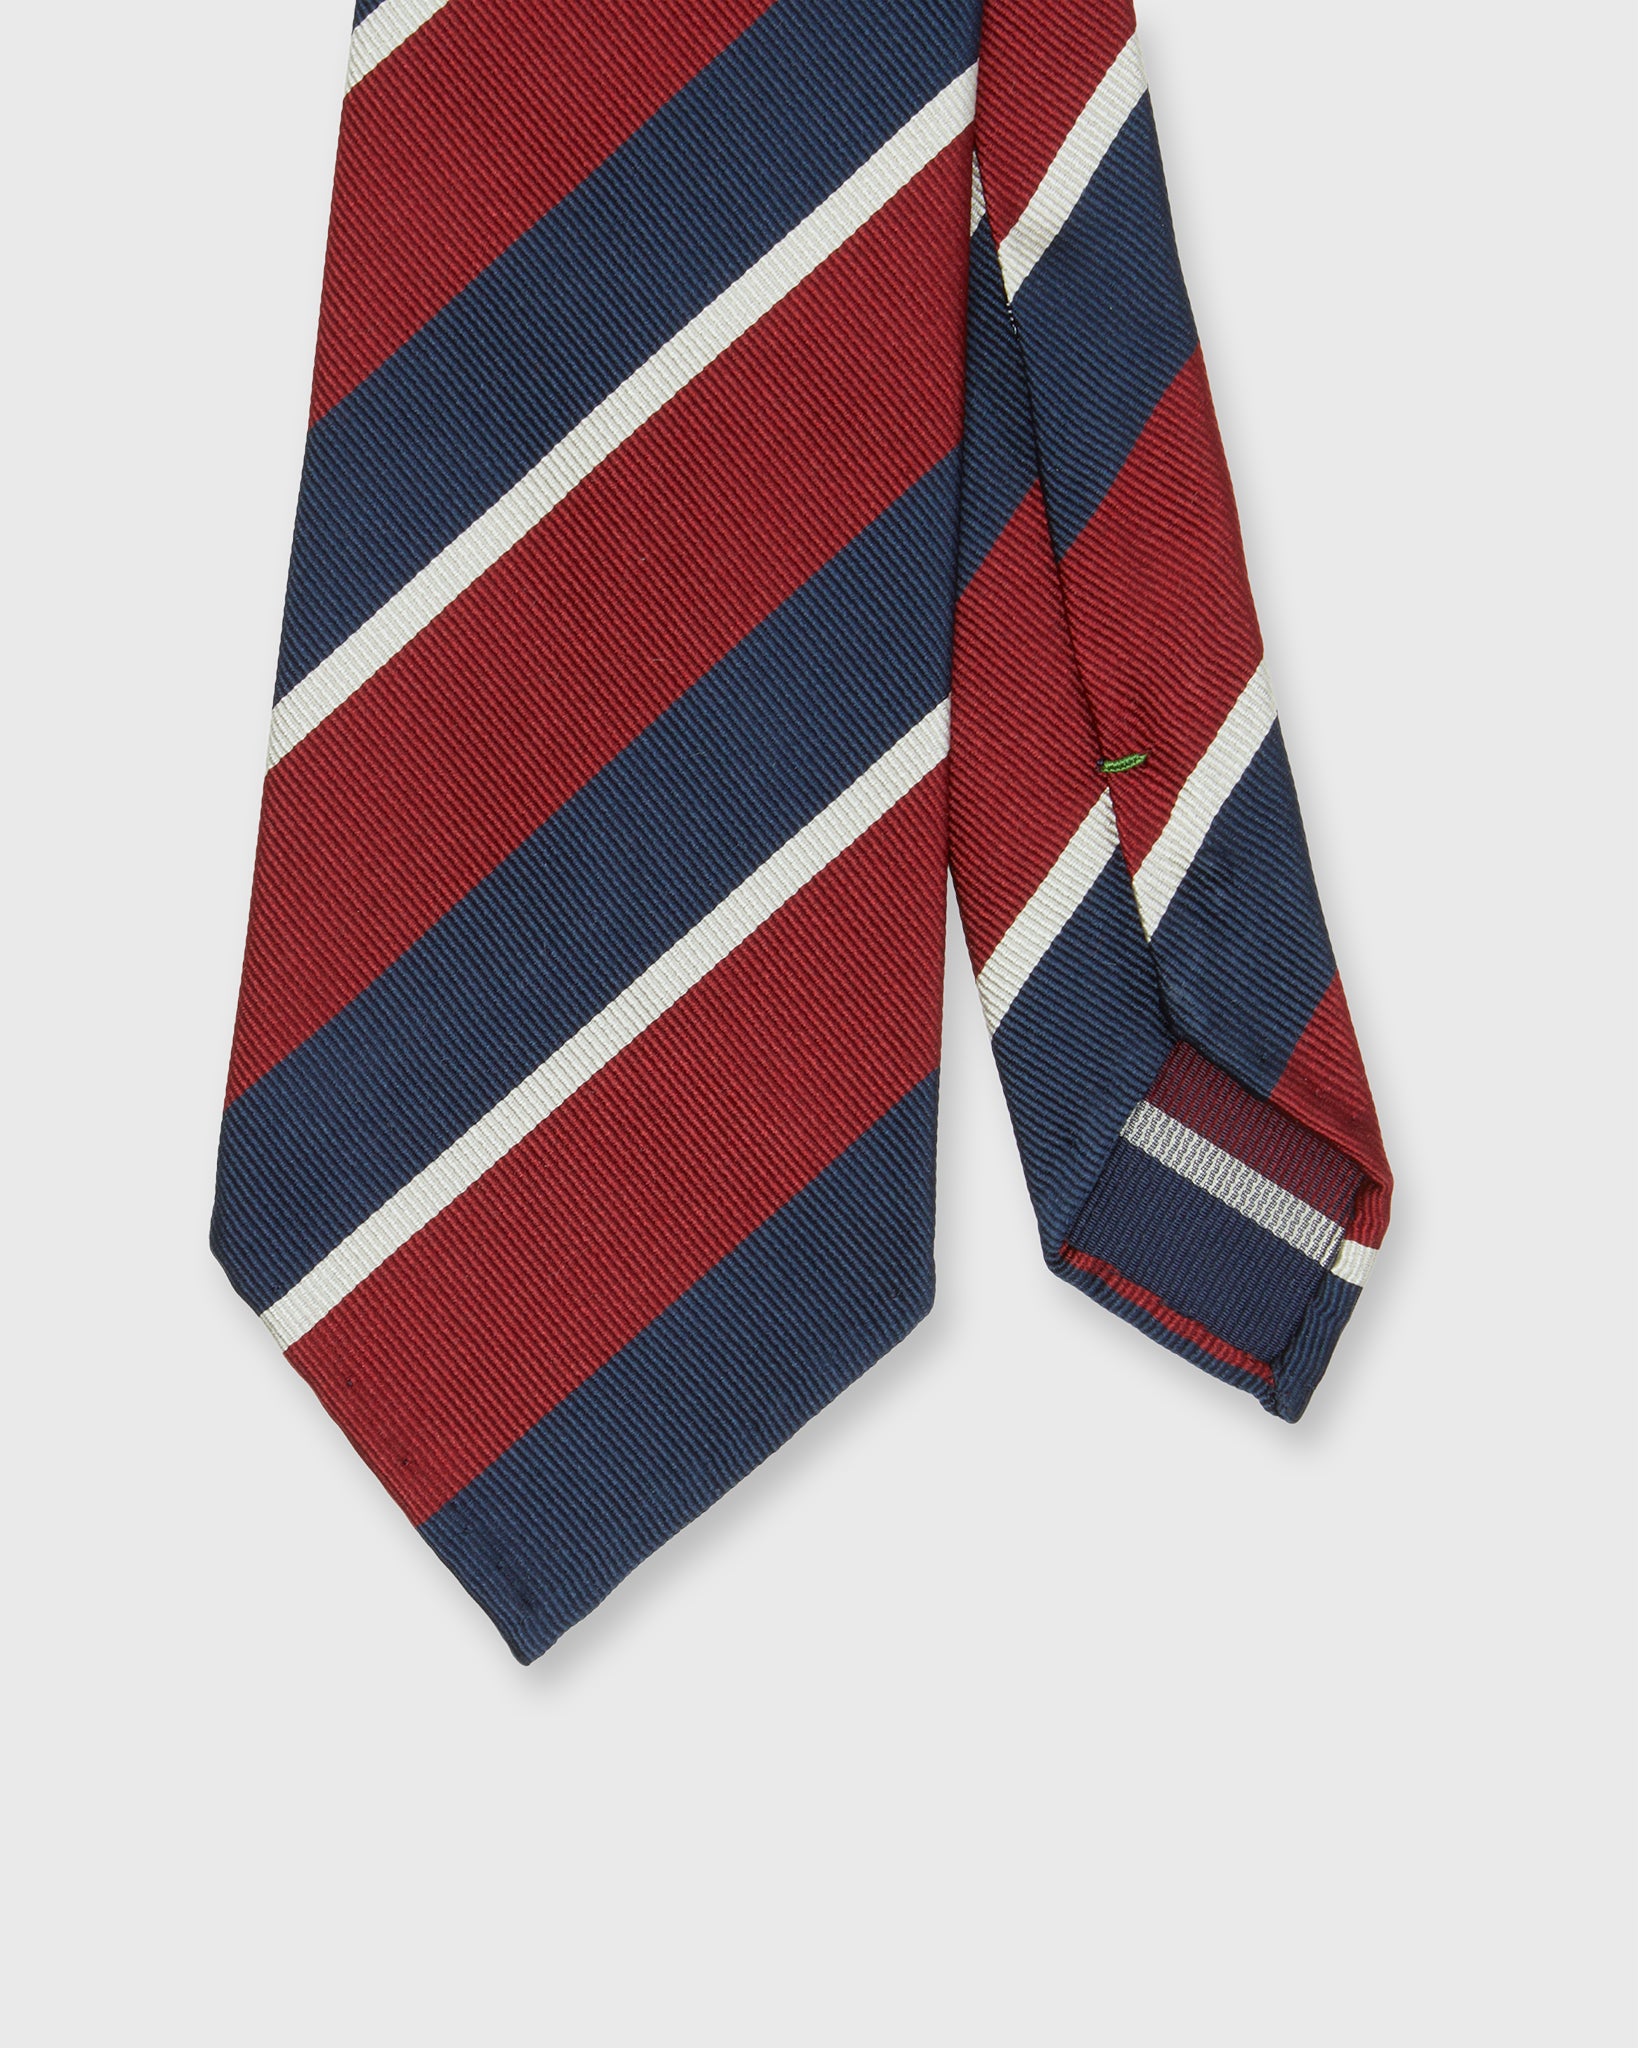 Silk Woven Tie in Red/Blue/Bone Stripe